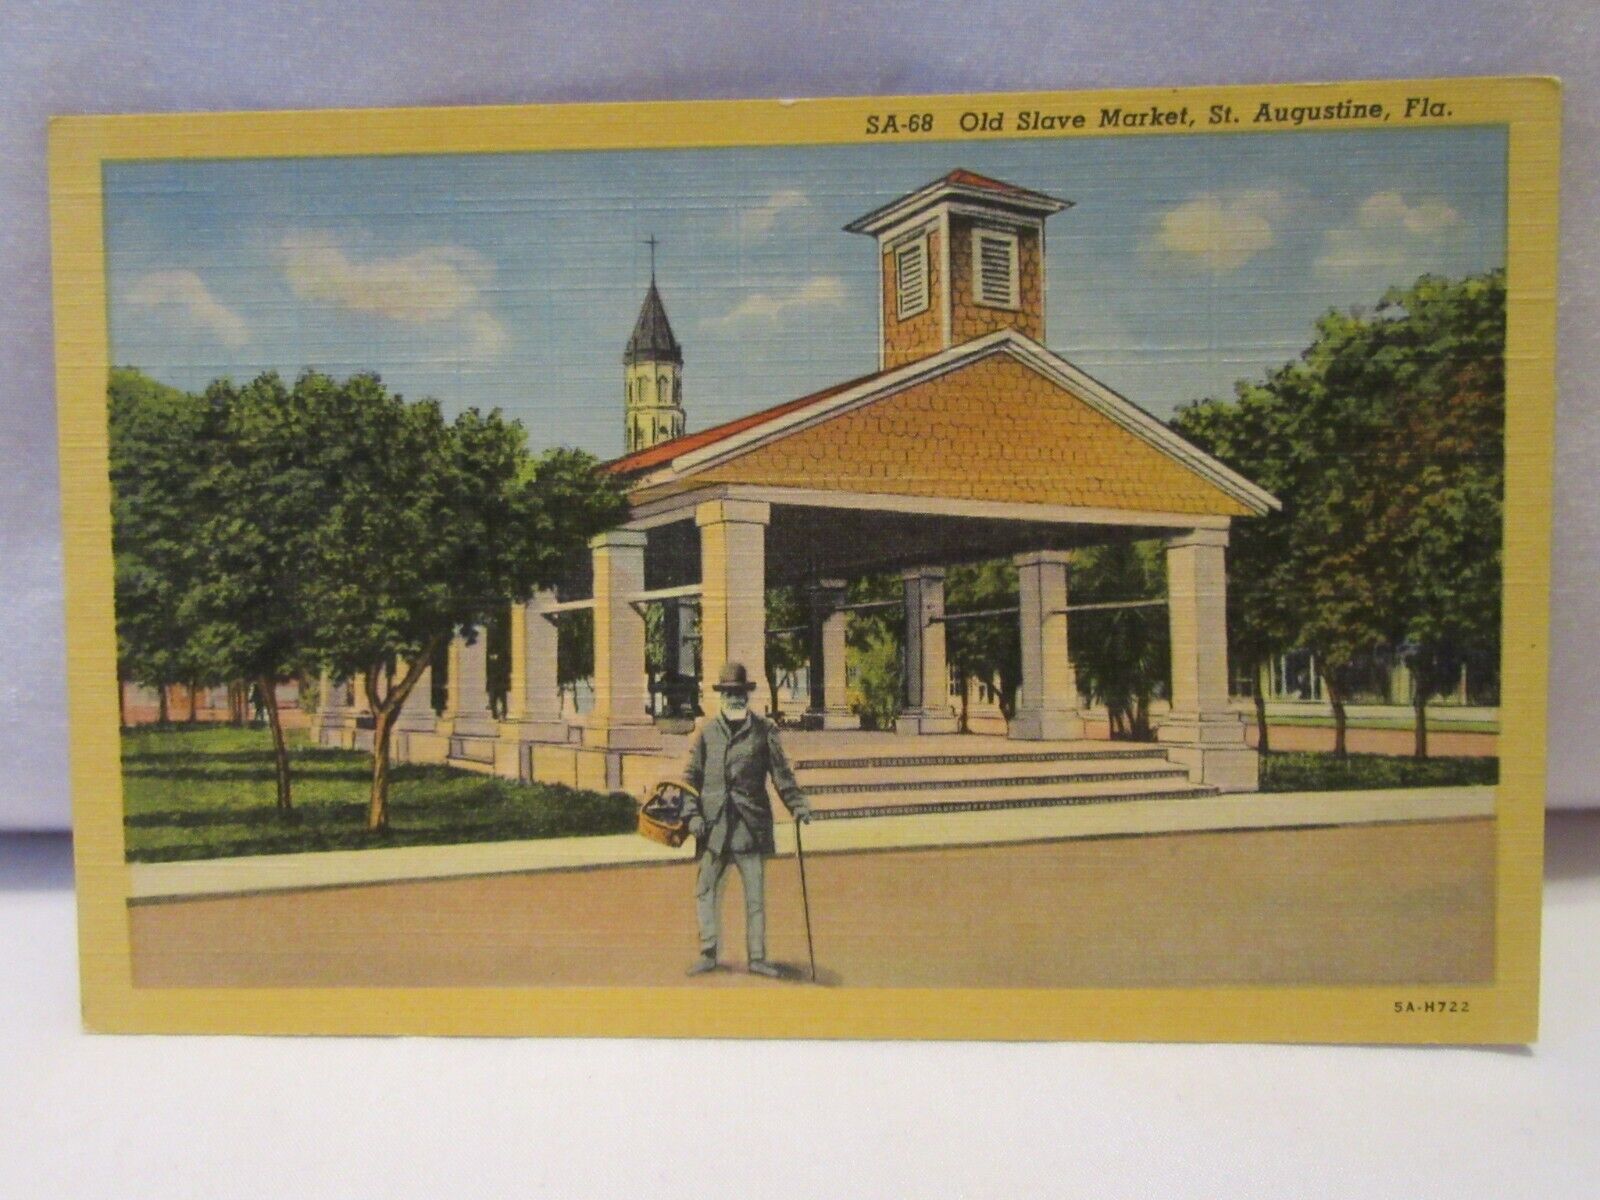 Vintage Postcard - SA-68 - Old Slave Market, St. Augustine, FL